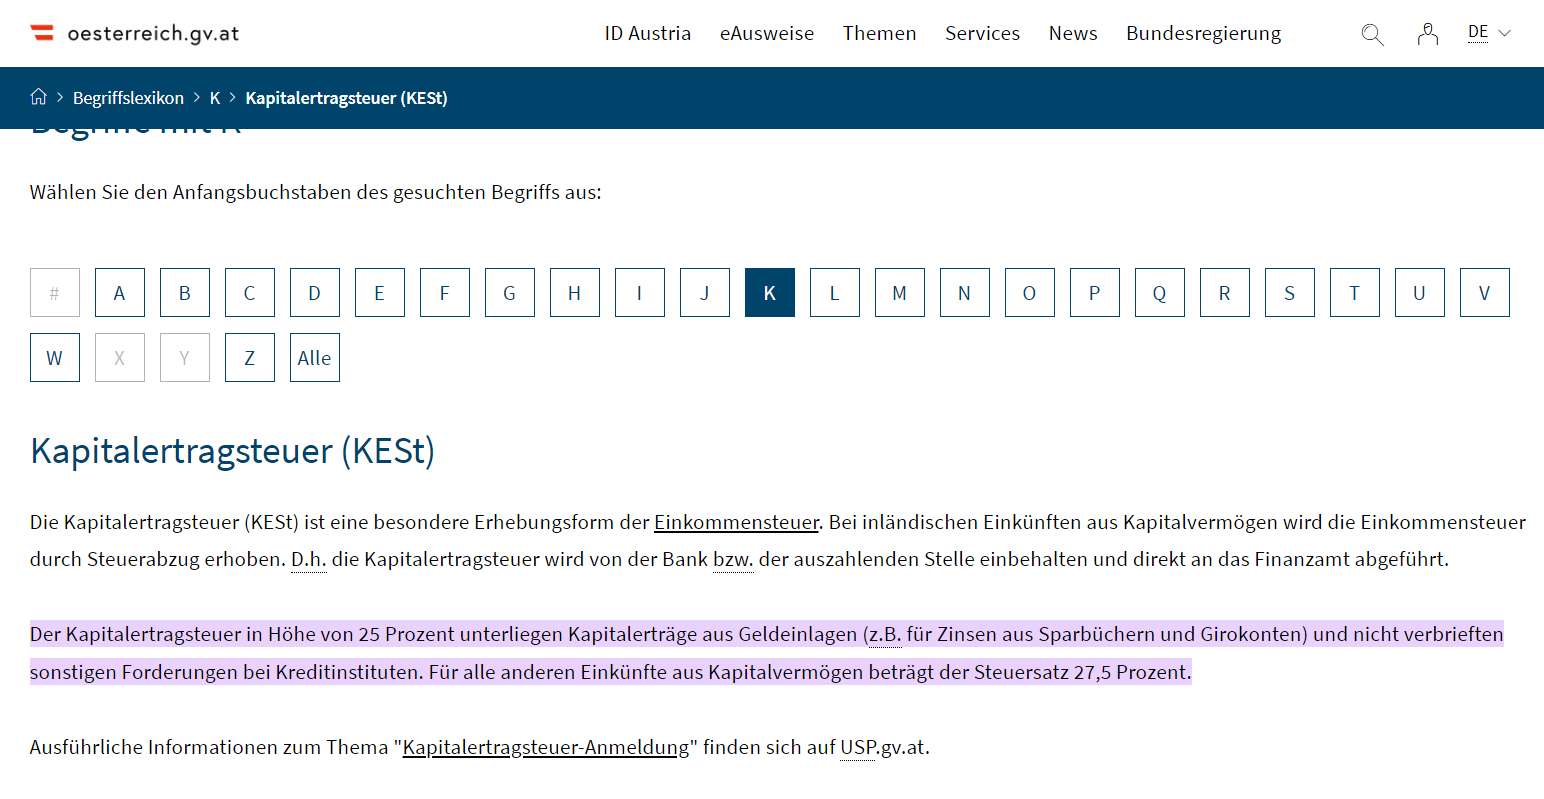 Informationen zur Kapitalertragssteuer auf der Homepage der österreichischen Regierung